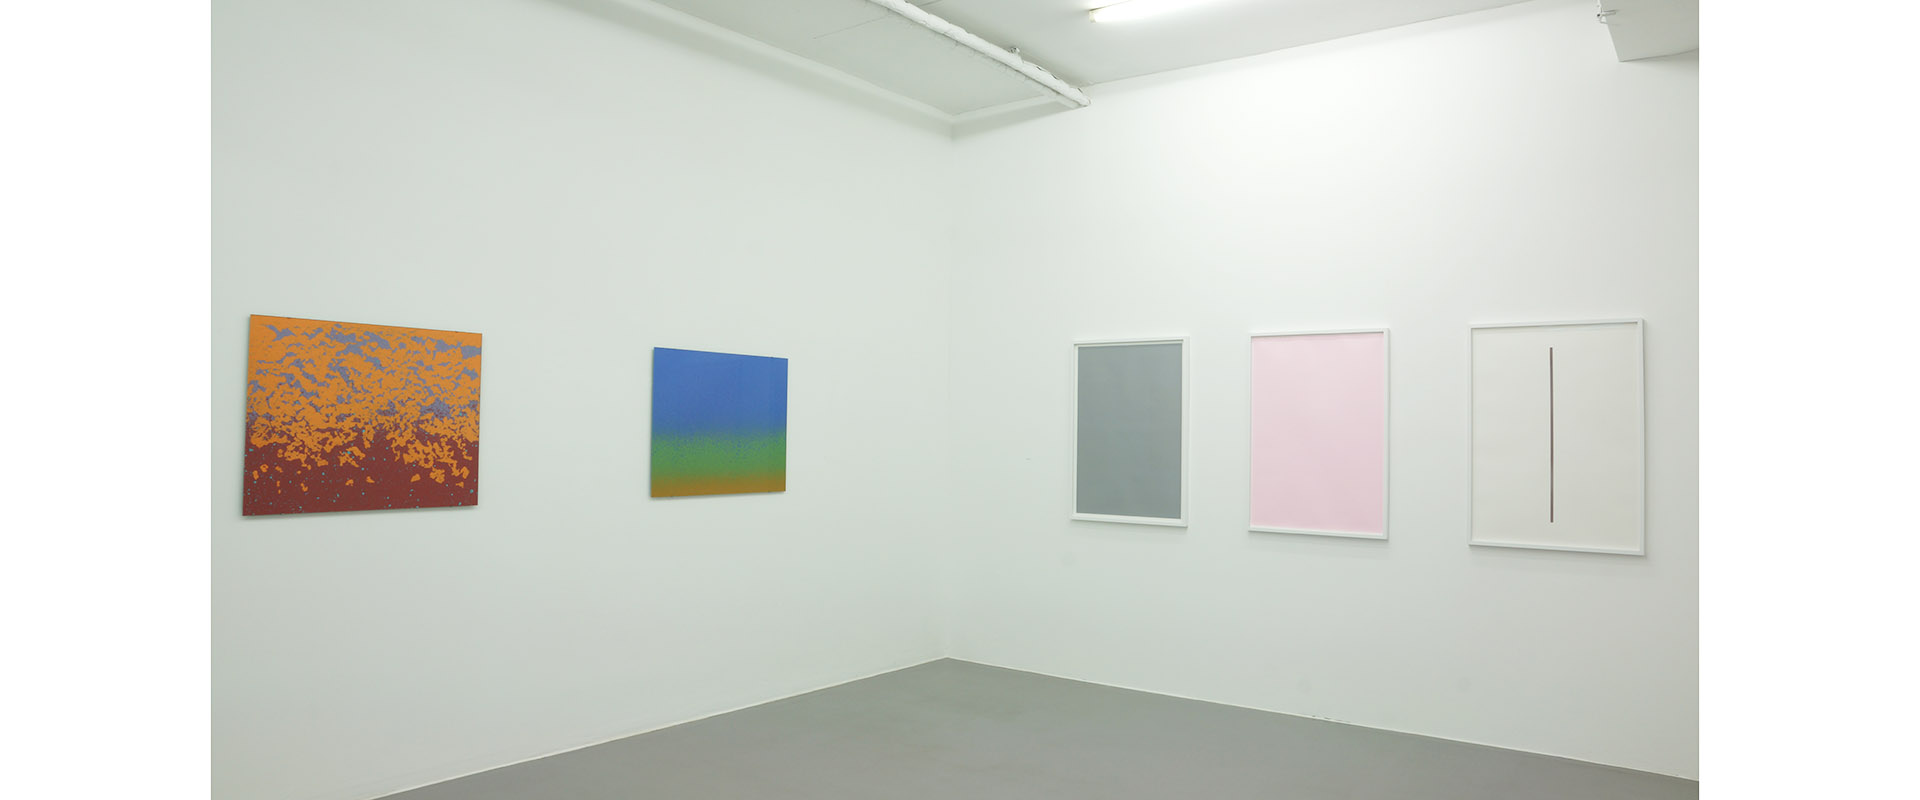 Ausstellungsansicht "Papierwelten 3.0", Galerie Renate Bender 2019